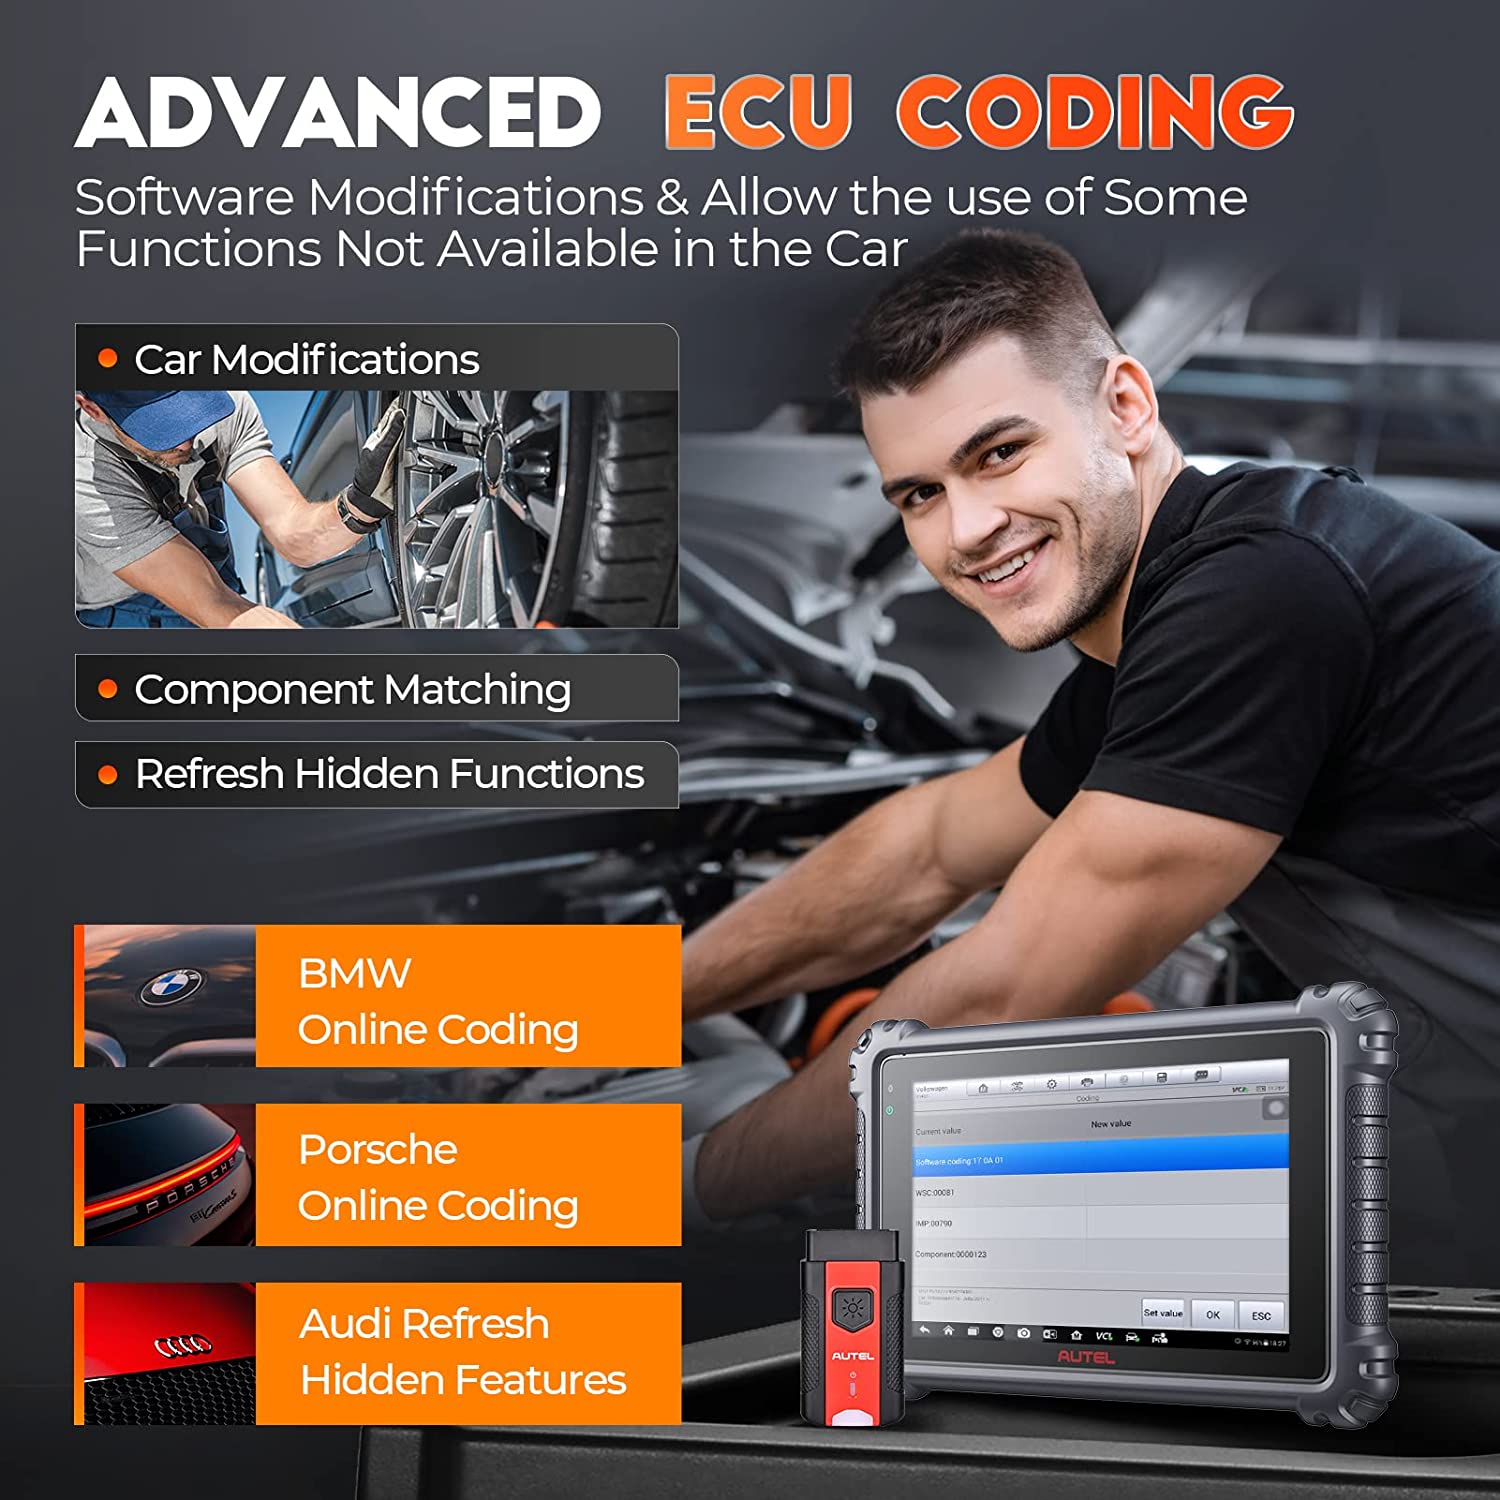 Autel Maxicom MK906 Pro has advanced ECU Coding